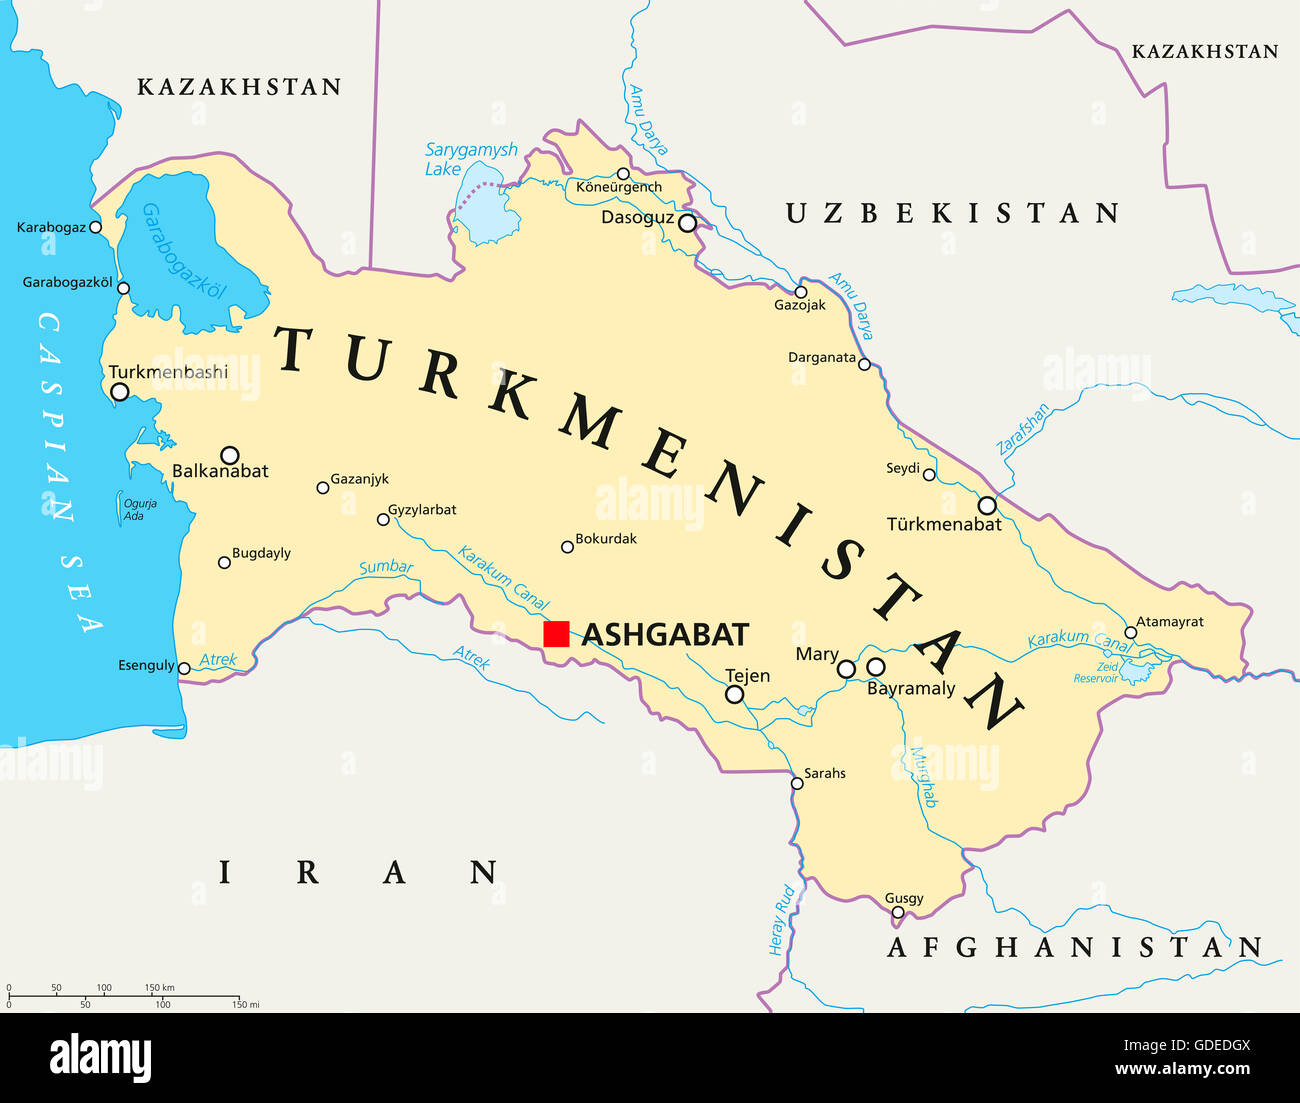 Turkmenistan mappa politico con capitale Aşgabat, confini nazionali importanti città, fiumi e laghi. Paese dell Asia centrale. Foto Stock